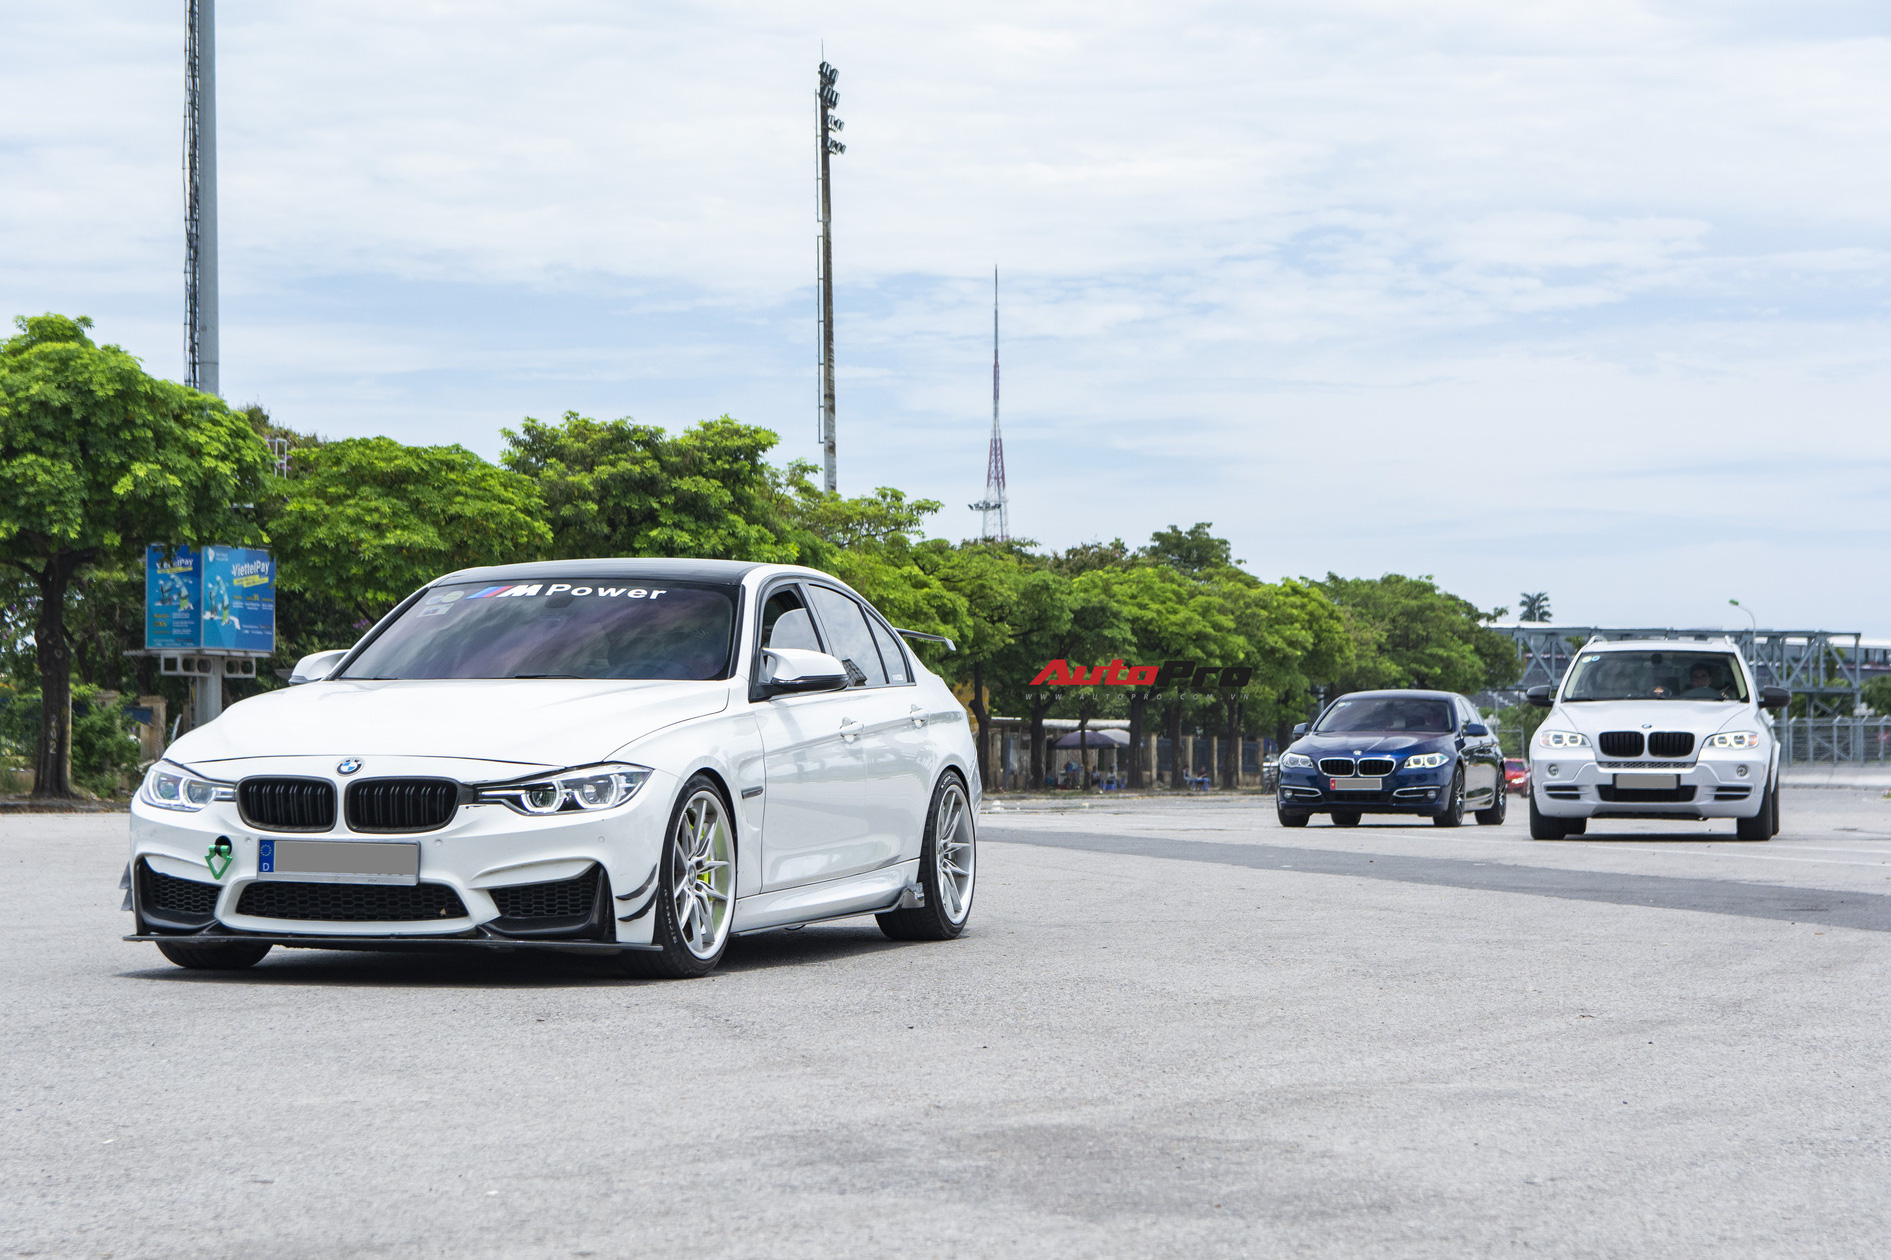 CLB BMW lớn nhất Việt Nam thành lập: Mất 3 tháng mới được duyệt hồ sơ, từng logo dán trên xe cũng theo chuẩn toàn cầu